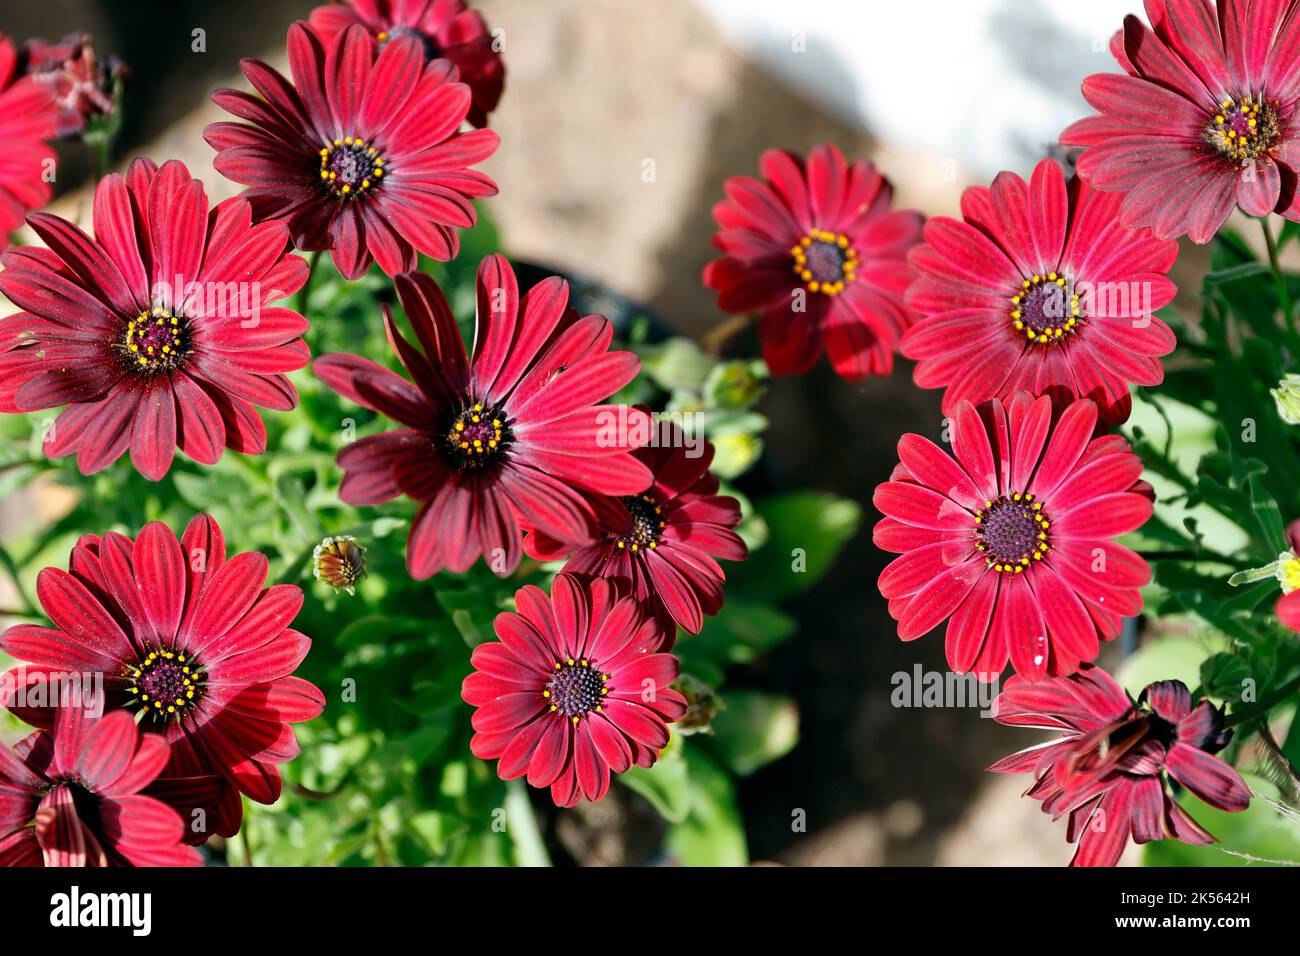 Serenity Red Osteospermum ( Osteospermum ecklonis) plante, communément connue sous le nom de Daisy africaine. Banque D'Images